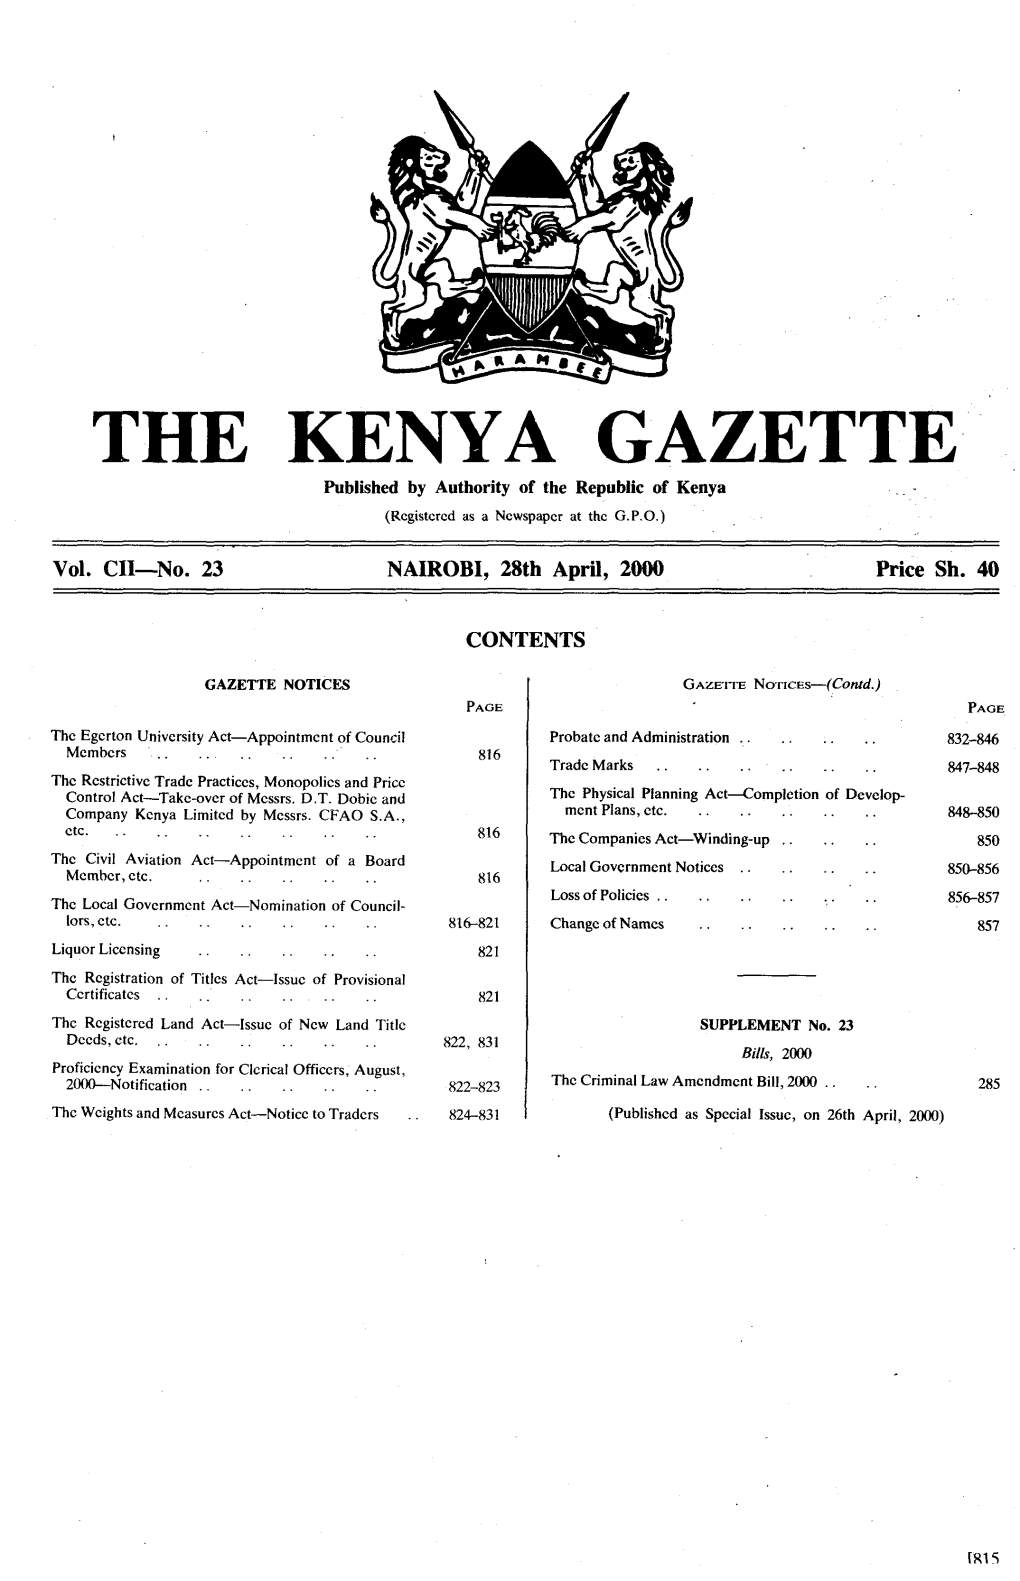 THE KENYA GAZETTE 28Th April, 20*